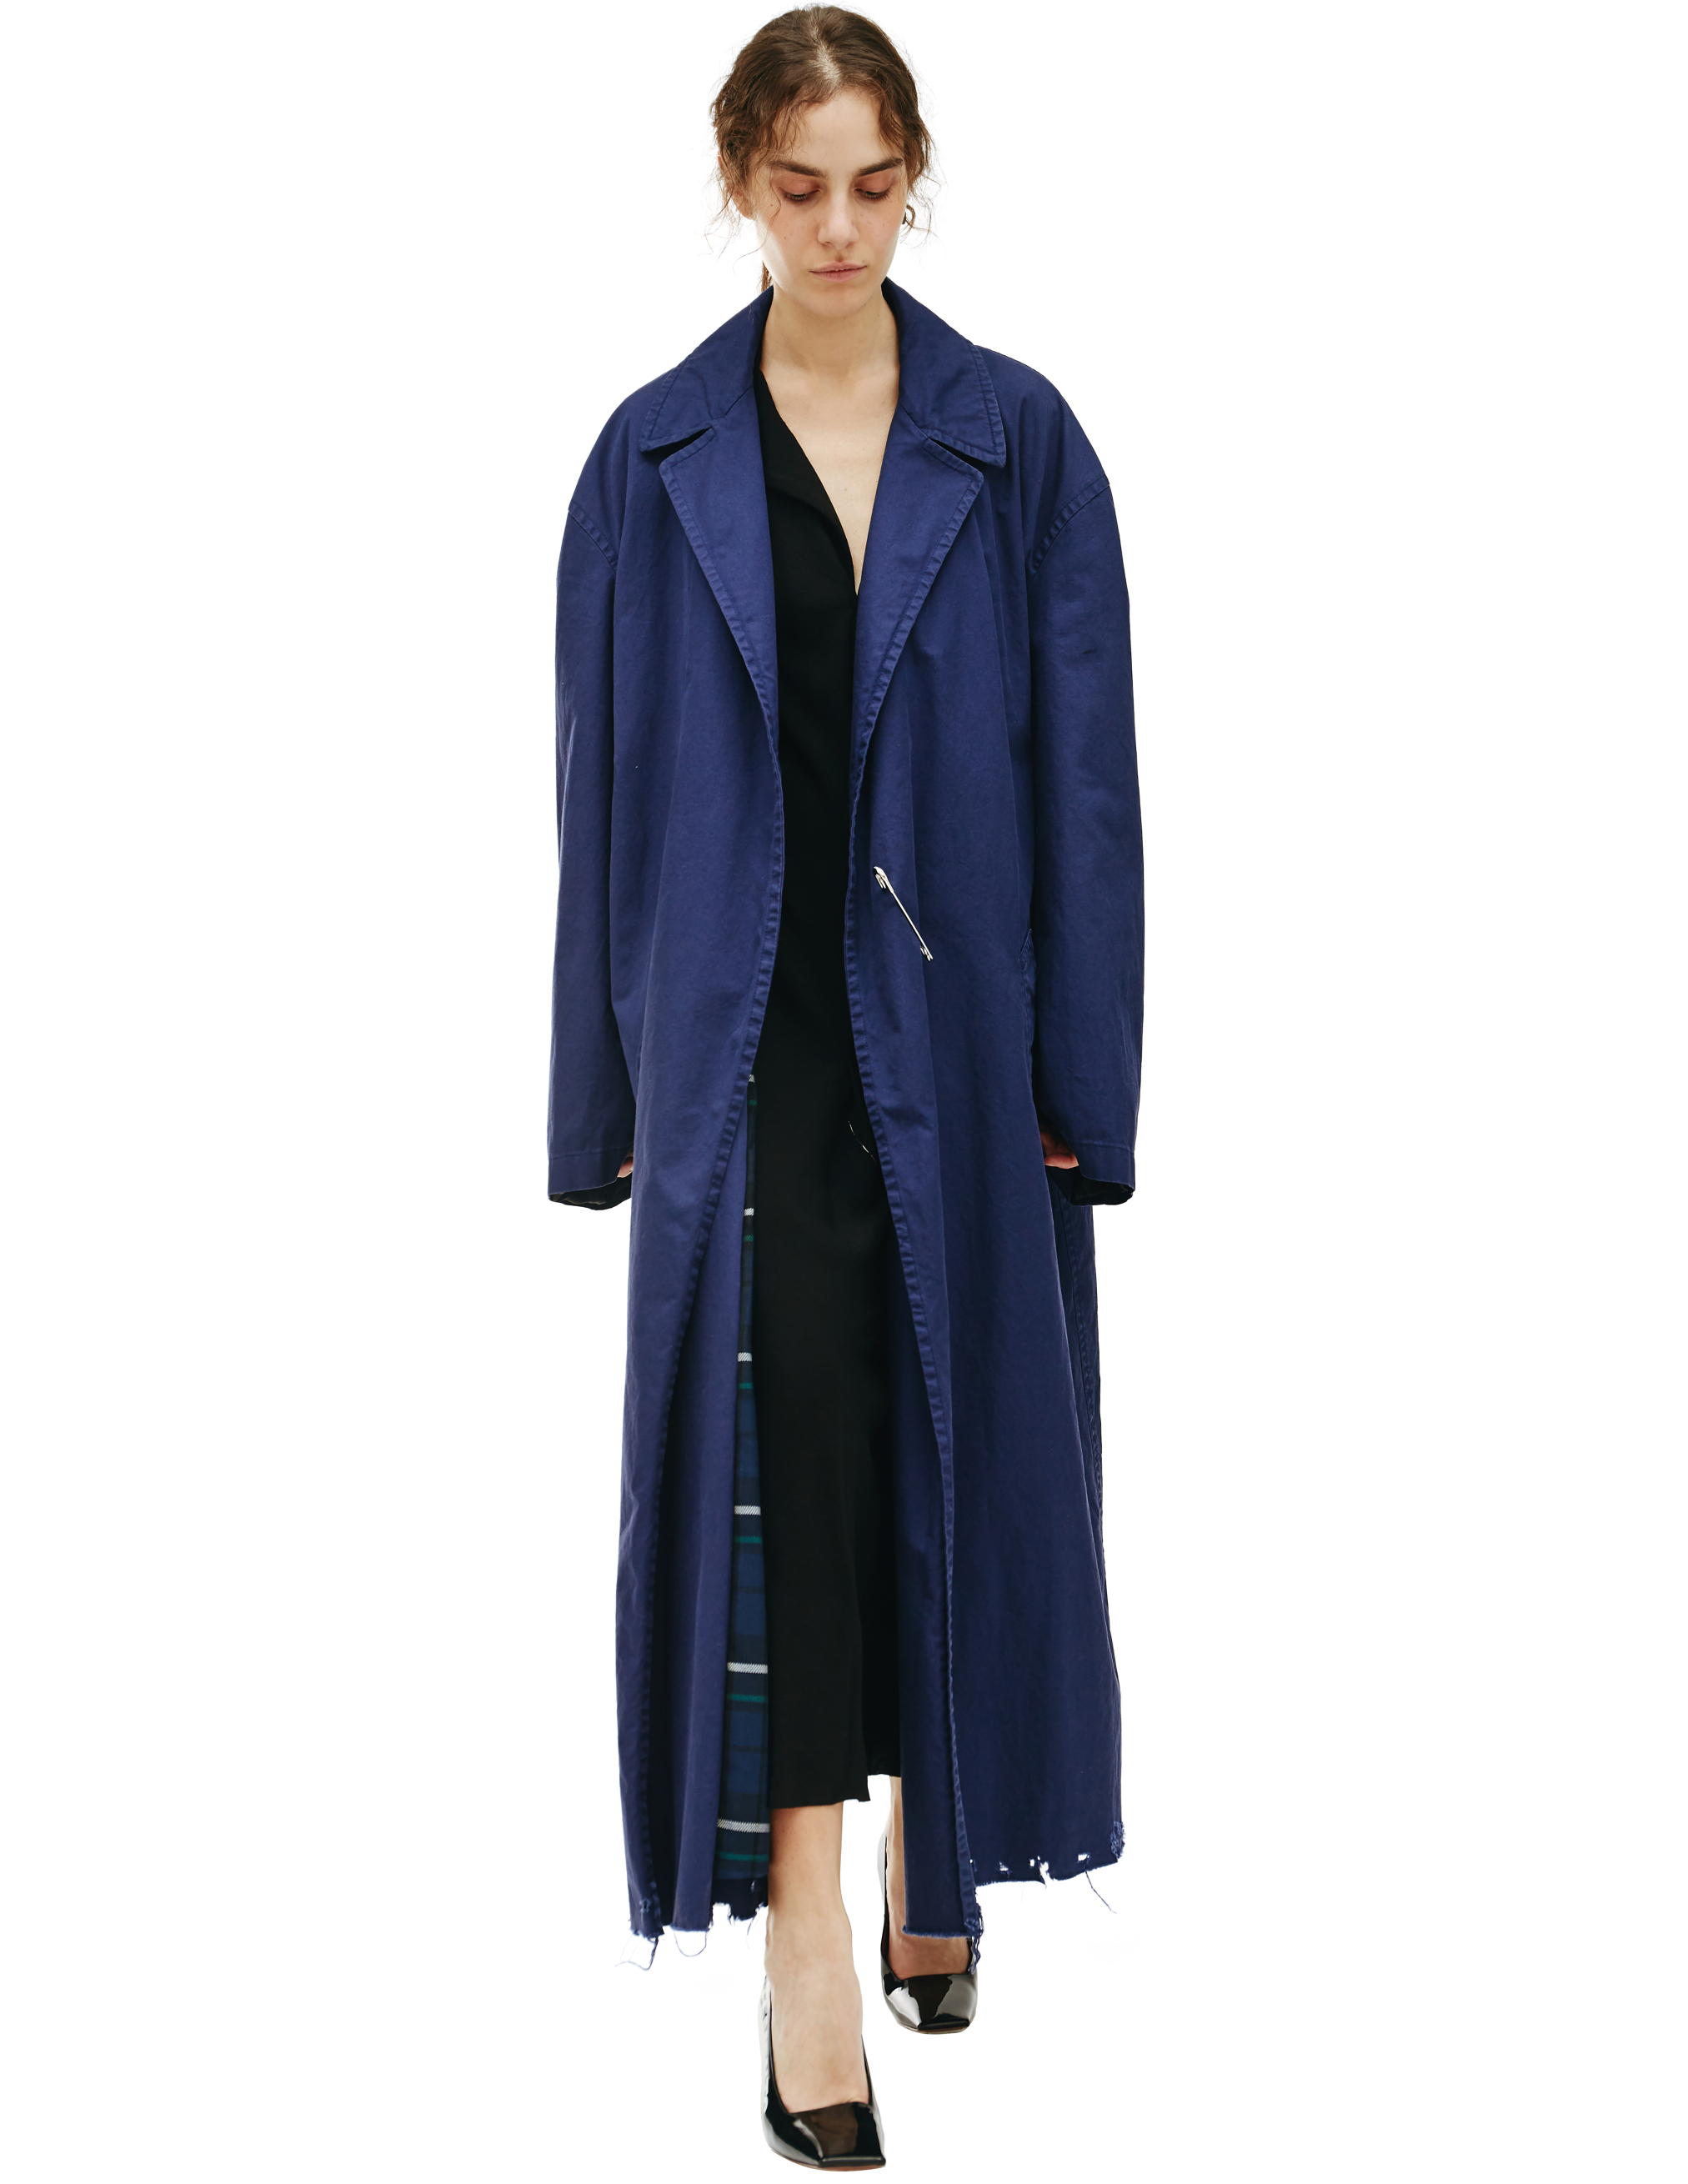 Оверсайз пальто с клетчатым подкладом Balenciaga 681165/TKP06/4140, размер 3